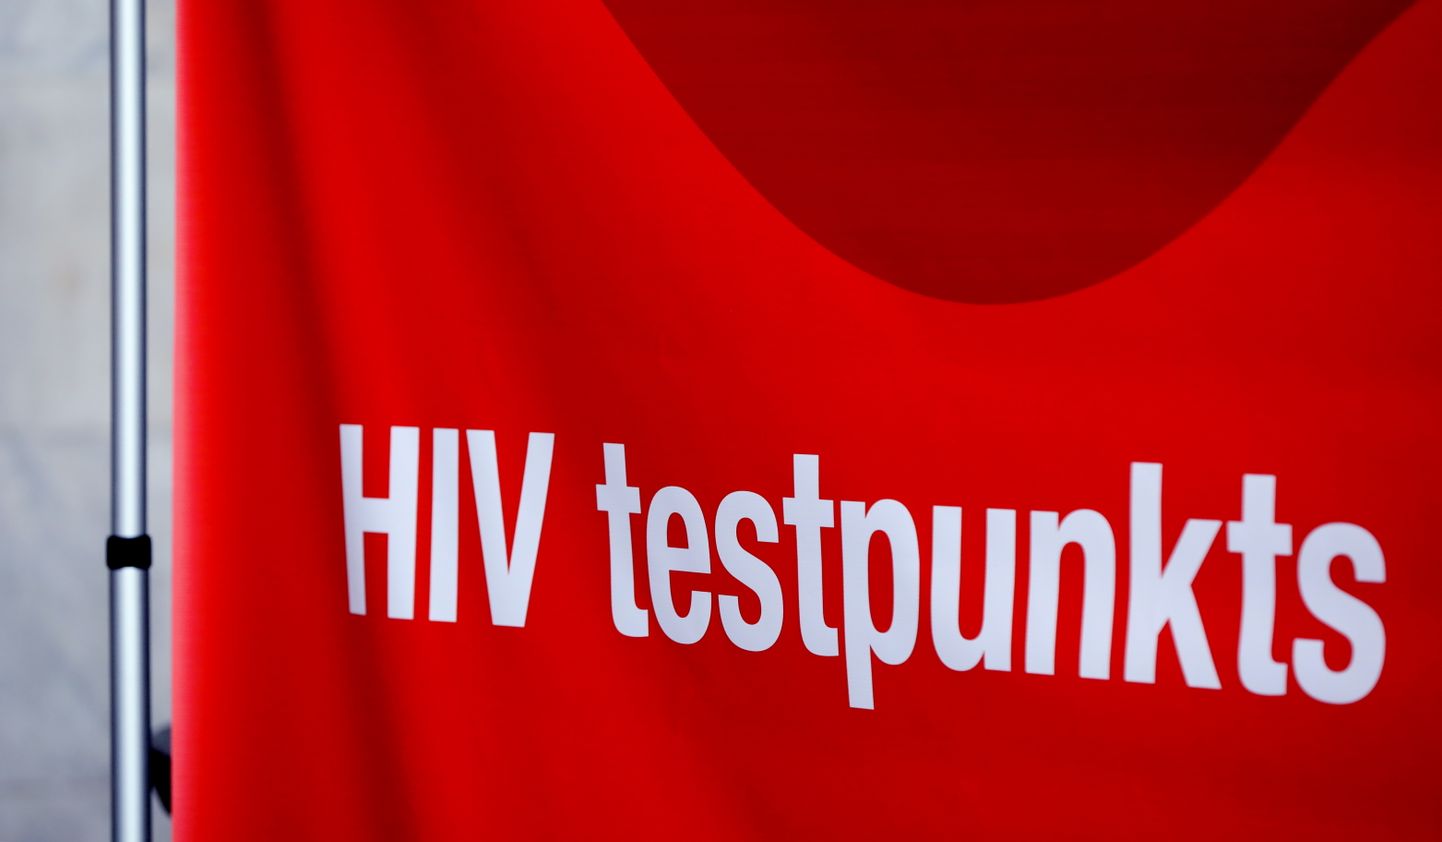 Eiropas HIV testēšanas nedēļas laikā Baltijas HIV asociācija aicina ikvienu izmantot iespēju bez maksas veikt anonīmu HIV eksprestestu Rīgas Centrālajā dzelzceļa stacijā.